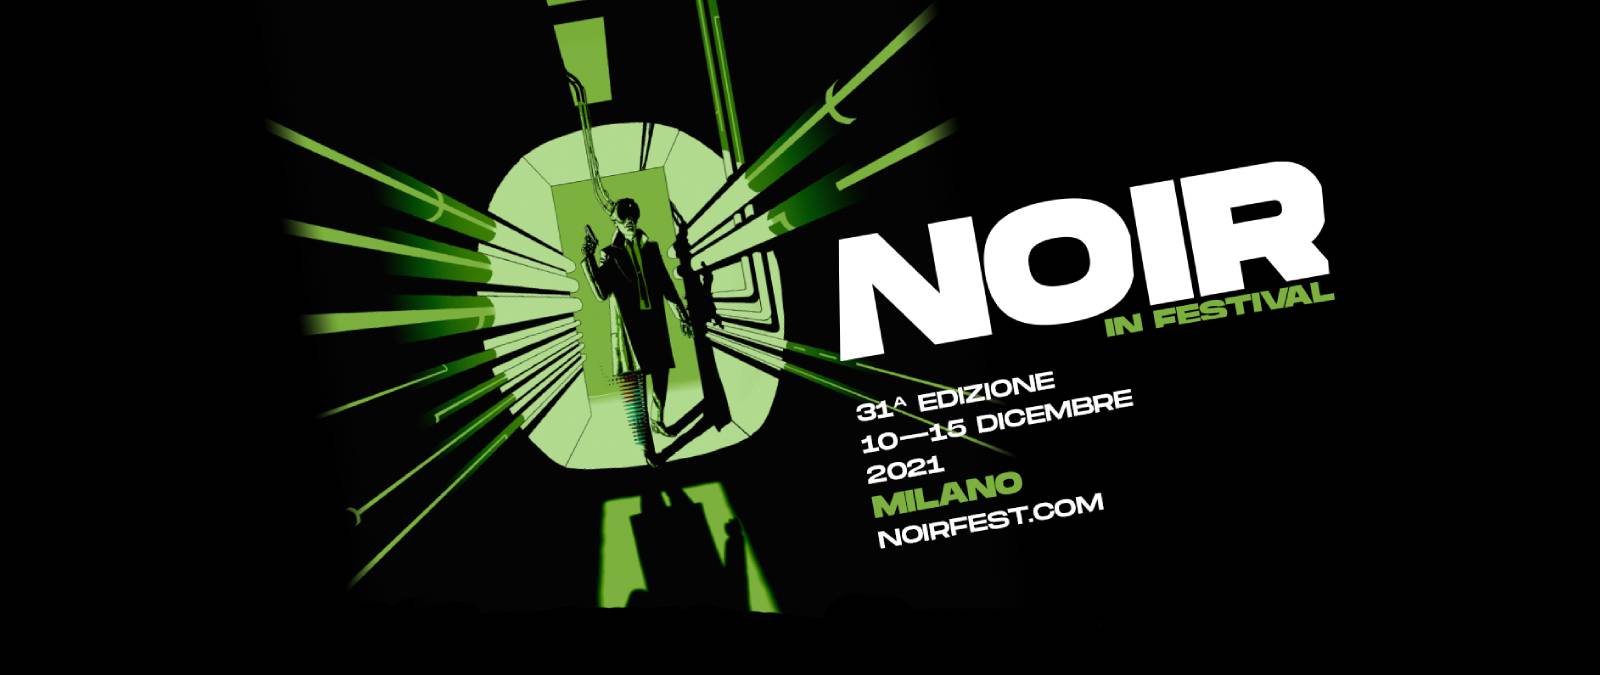 Noir in Festival 2021